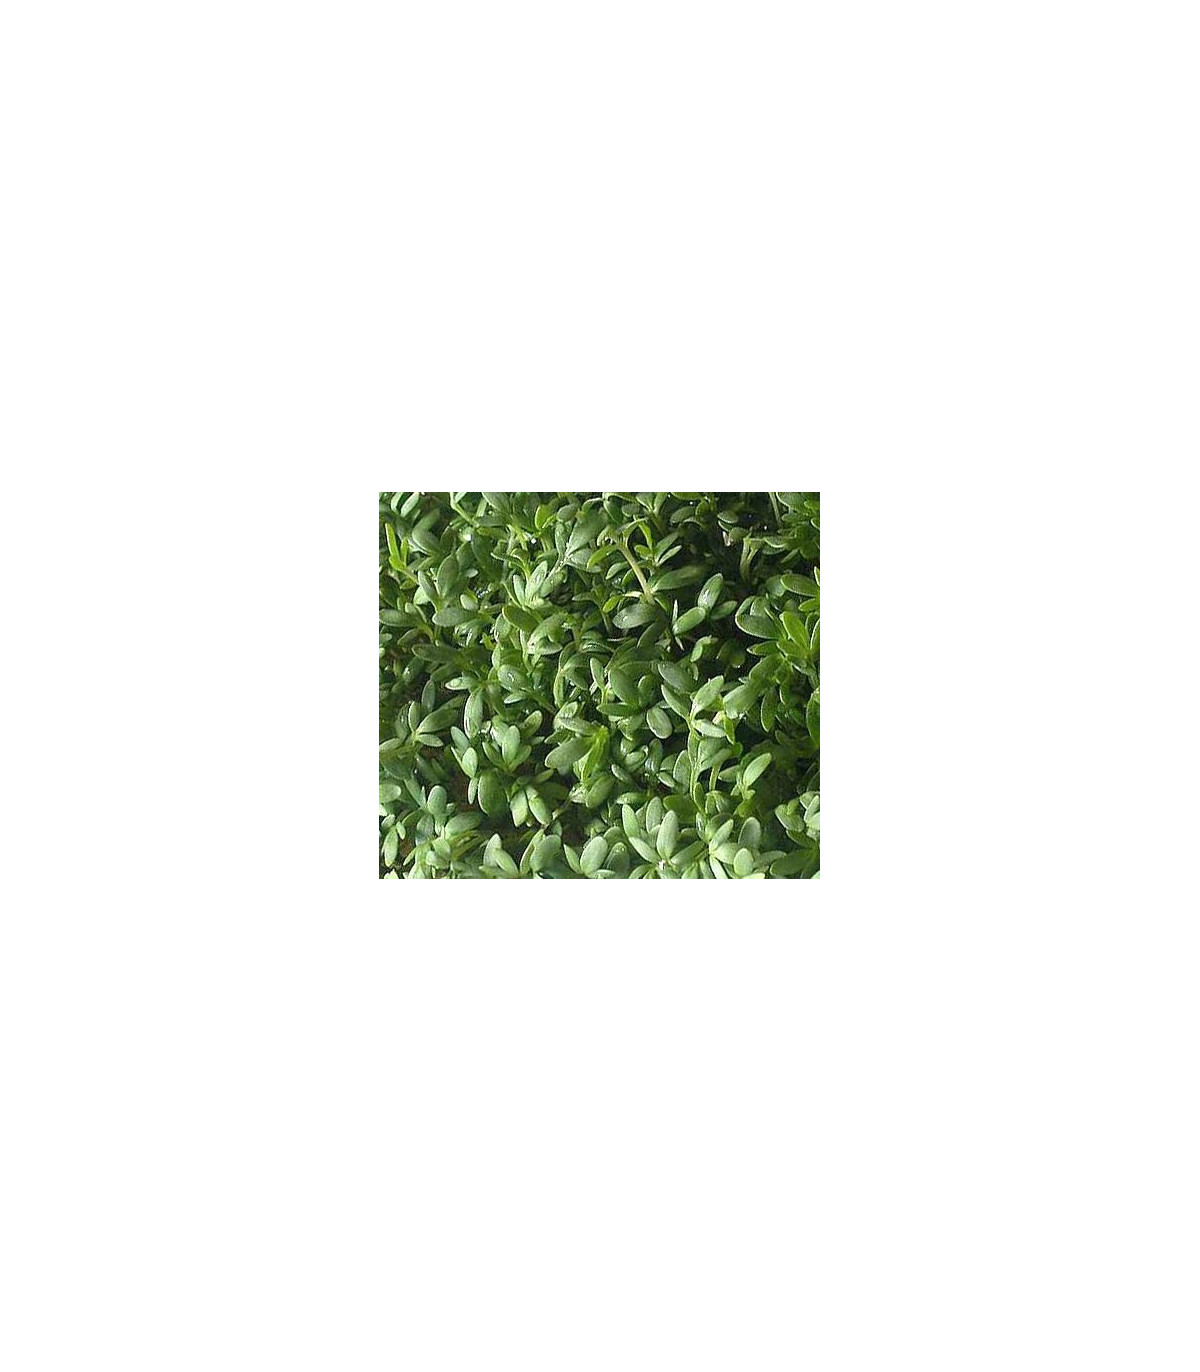 Žerucha záhradná - rastlina Lepidium sativum - osivo žeruchy - 2.5 g